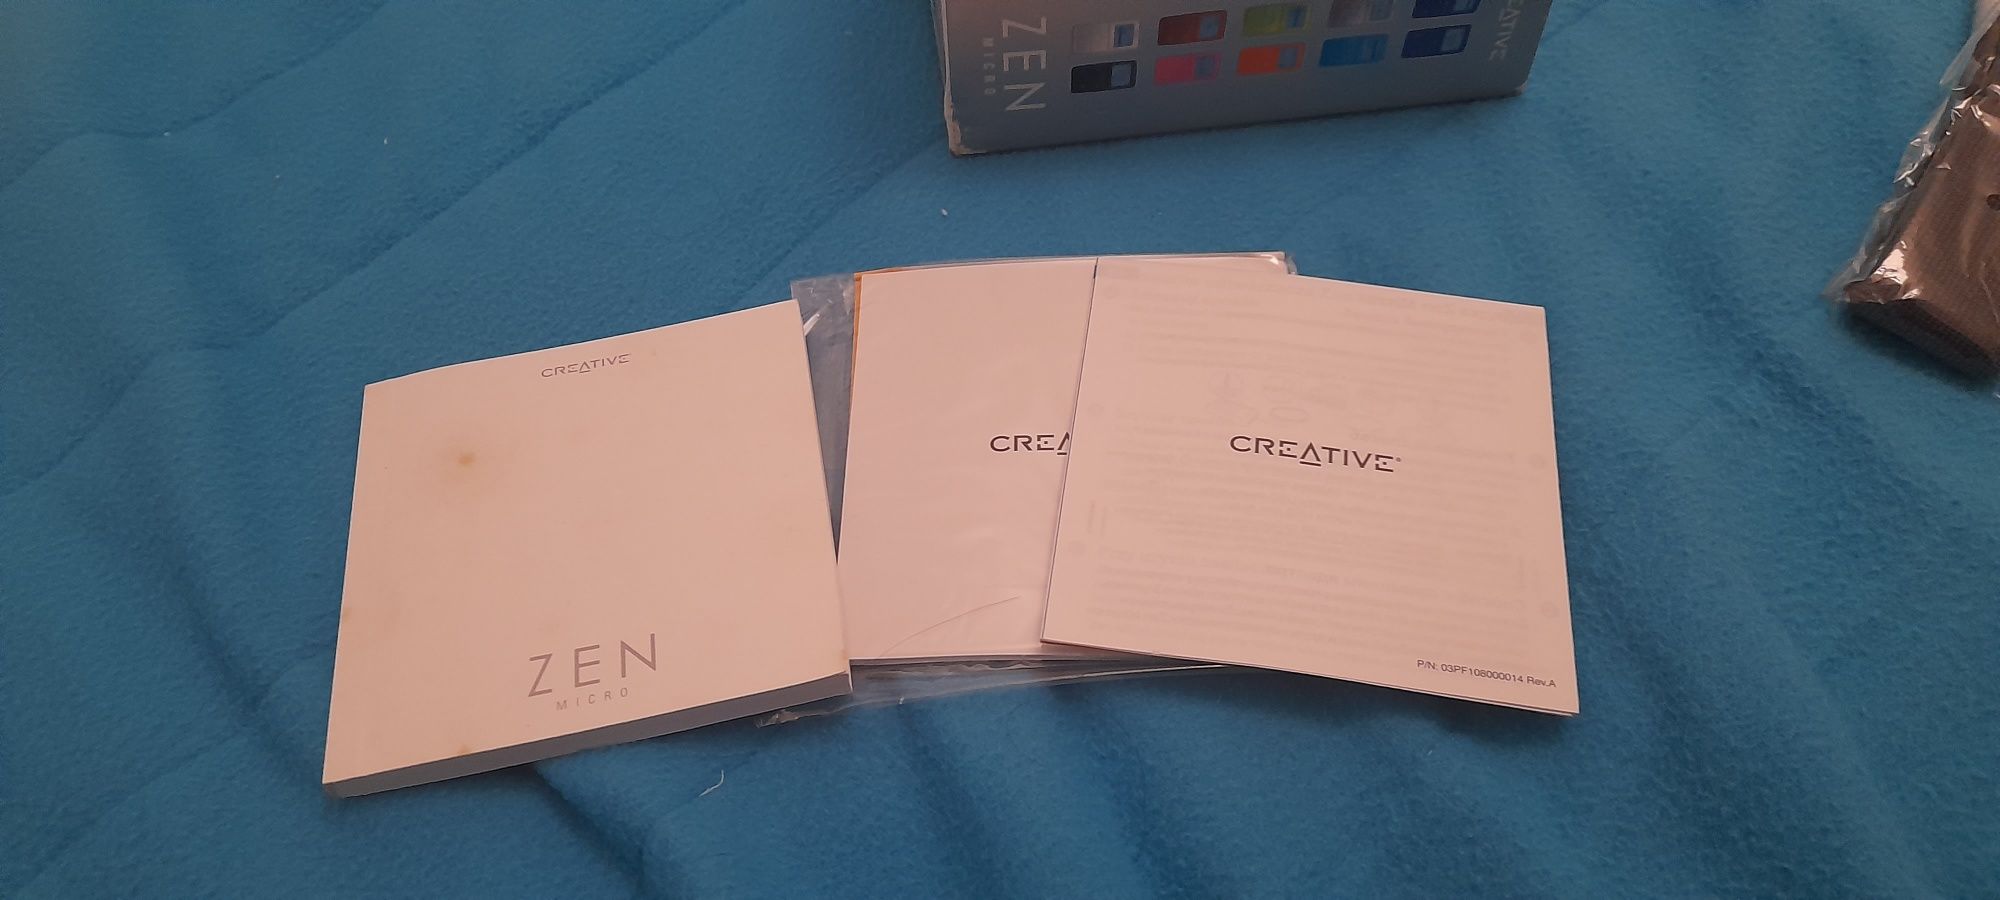 Creative Zen Micro com caixa e acessórios